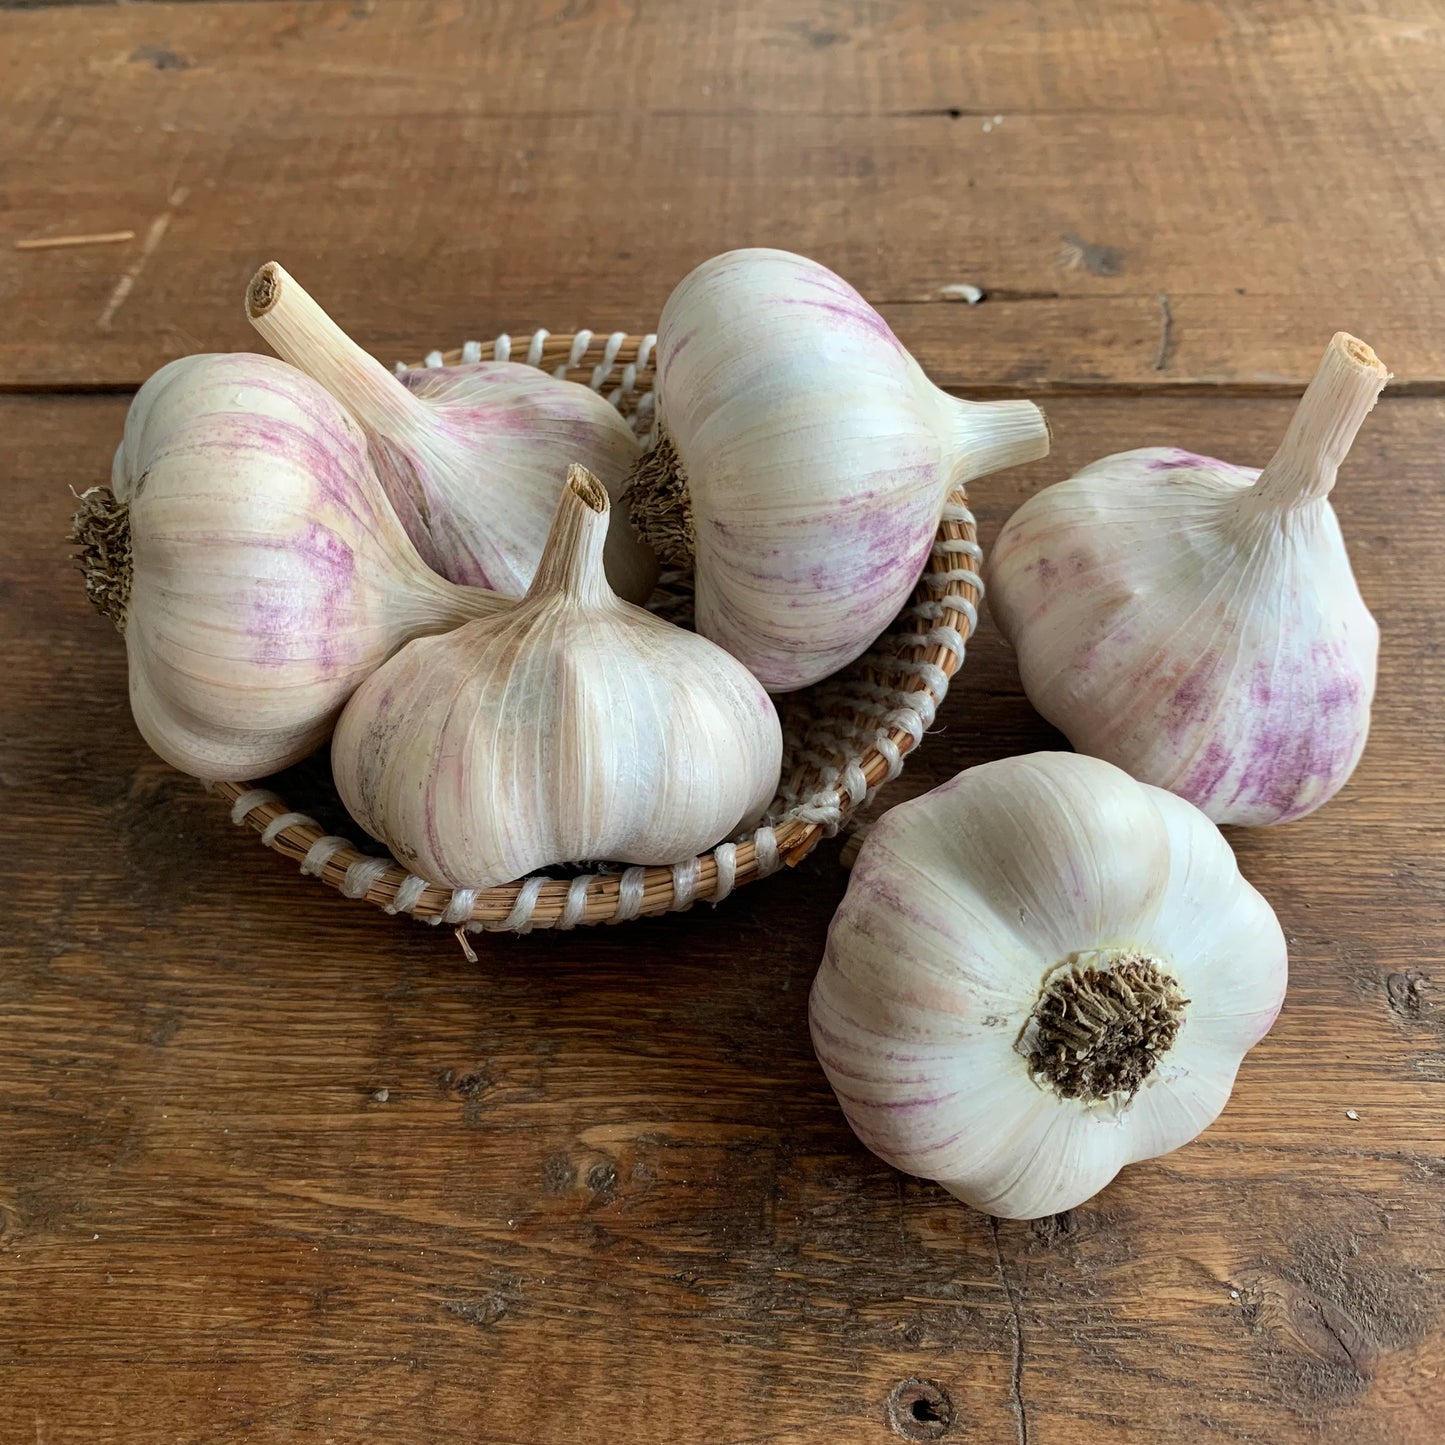 Culinary garlic